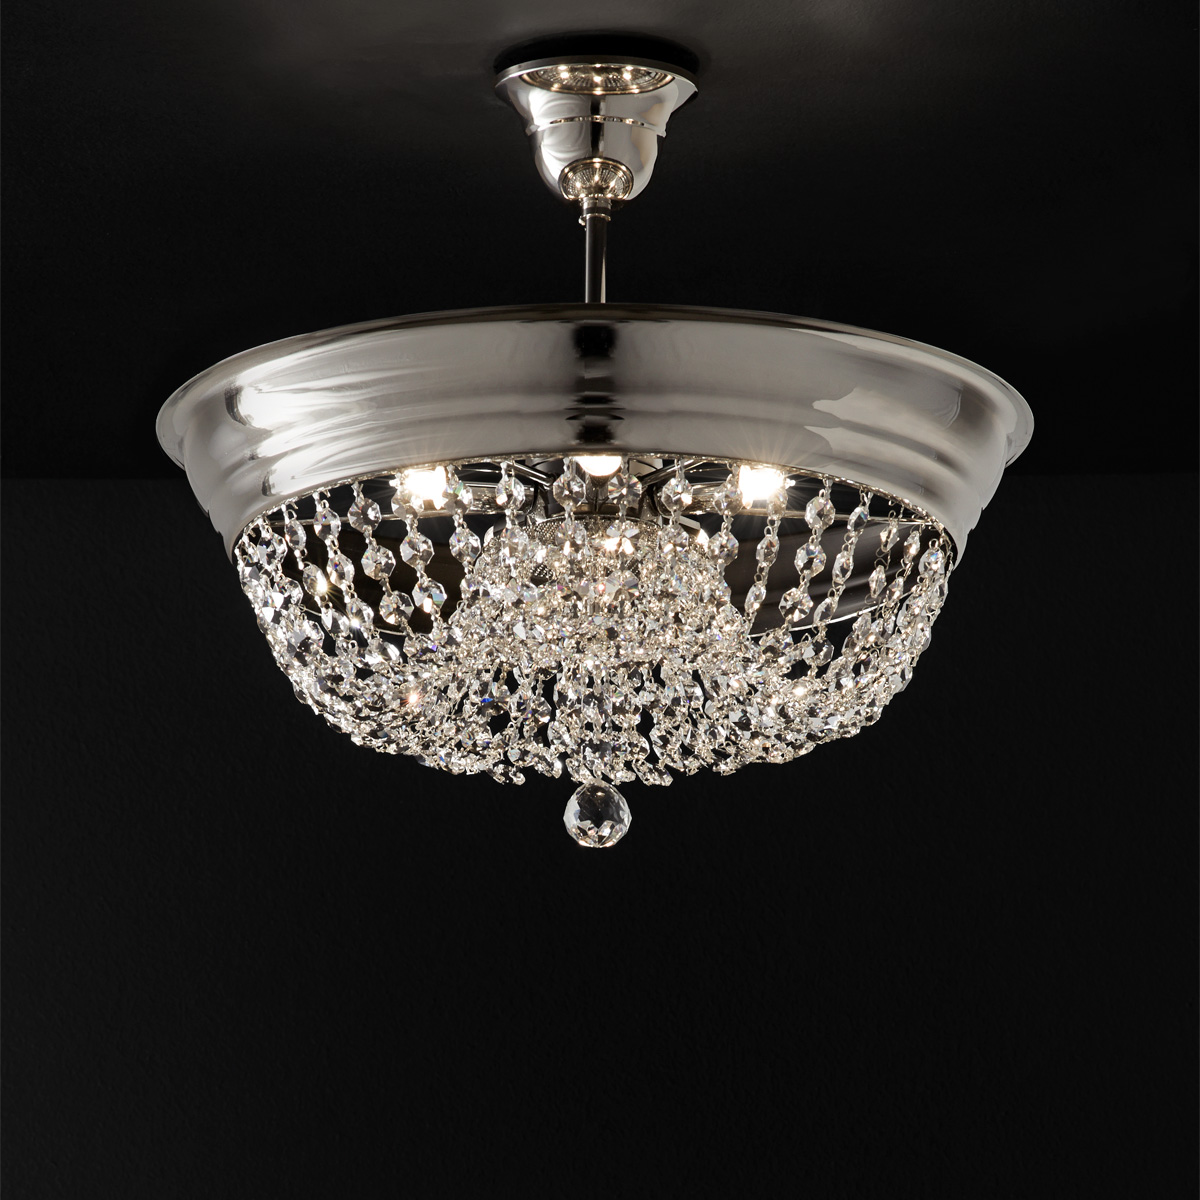 Κλασικό φωτιστικό οροφής με κρύσταλλα ΑΡΤΕΜΙΣ classic ceiling lamp with crystal accents